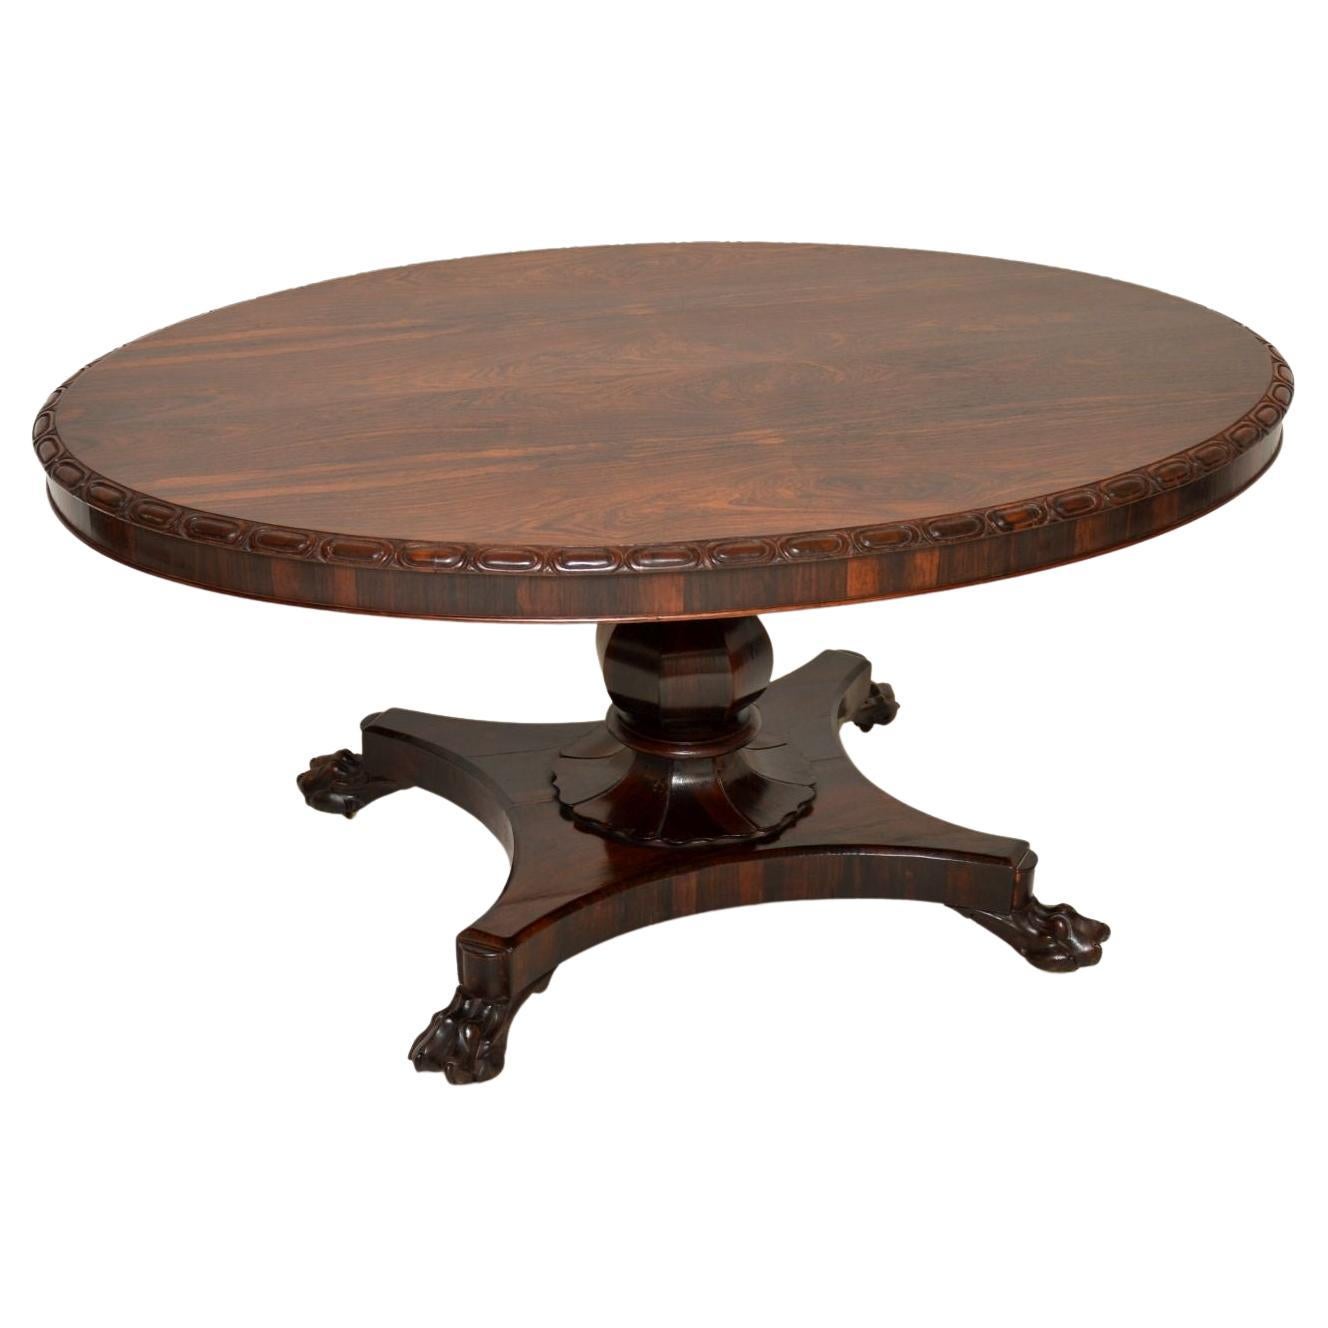 Ein schönes Beispiel für einen Tisch aus der Zeit Wilhelms IV. Sie wurde in England hergestellt und stammt aus den 1830-40er Jahren.

Er ist von hervorragender Qualität, mit schönen Schnitzereien am Rand der ovalen Platte und einem schön